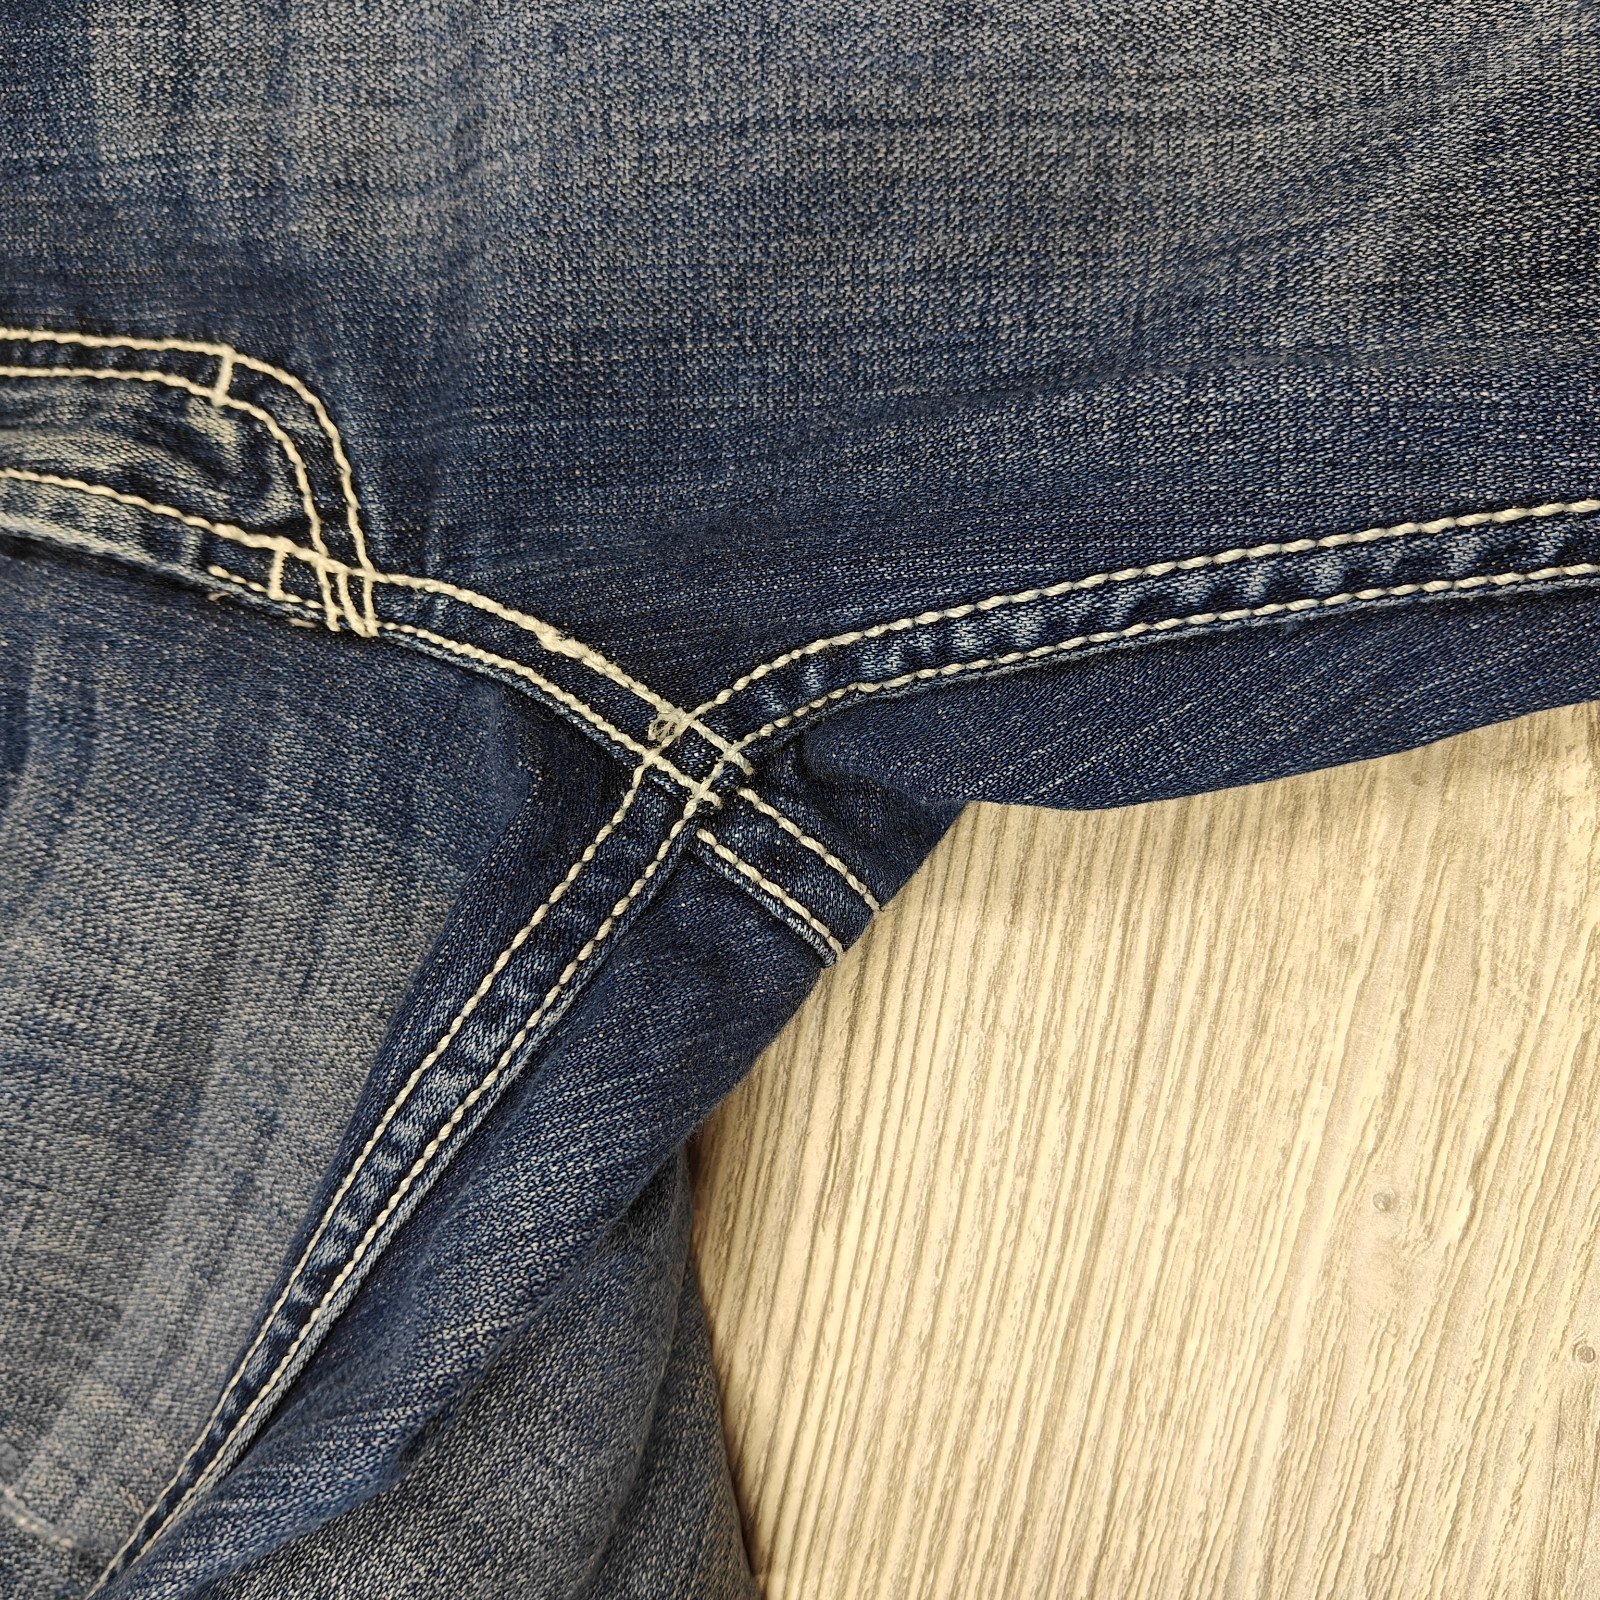 Factory Direct  BKE Culture BOOT CUT  Jeans Women’s Size 28 Stretch (size 6) kXLqr881L hot sale